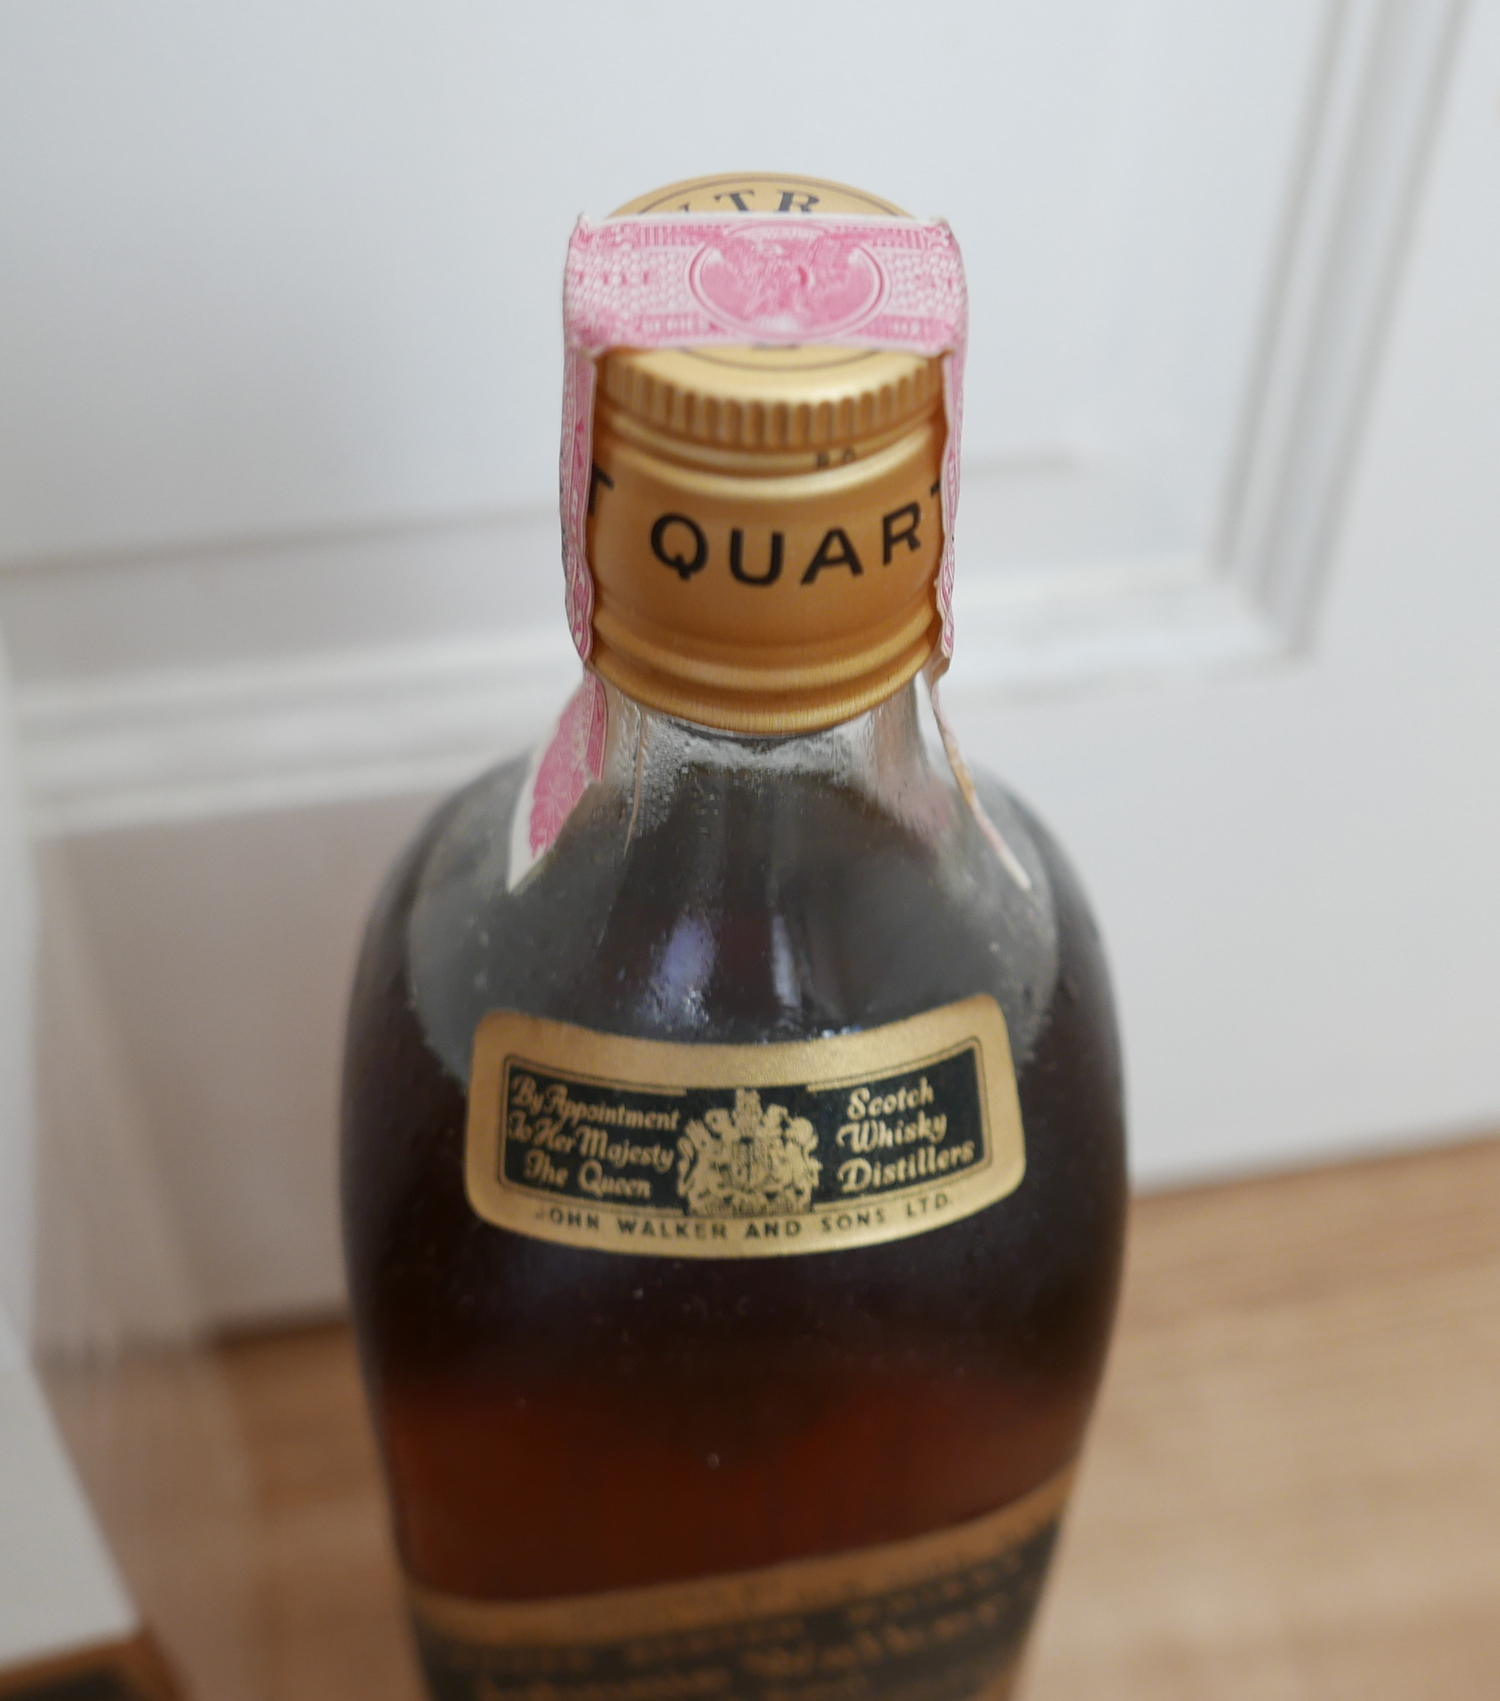 Vintage Boxed Quart Bottle of Johnnie Walker Black Label Whisky. - Image 2 of 2